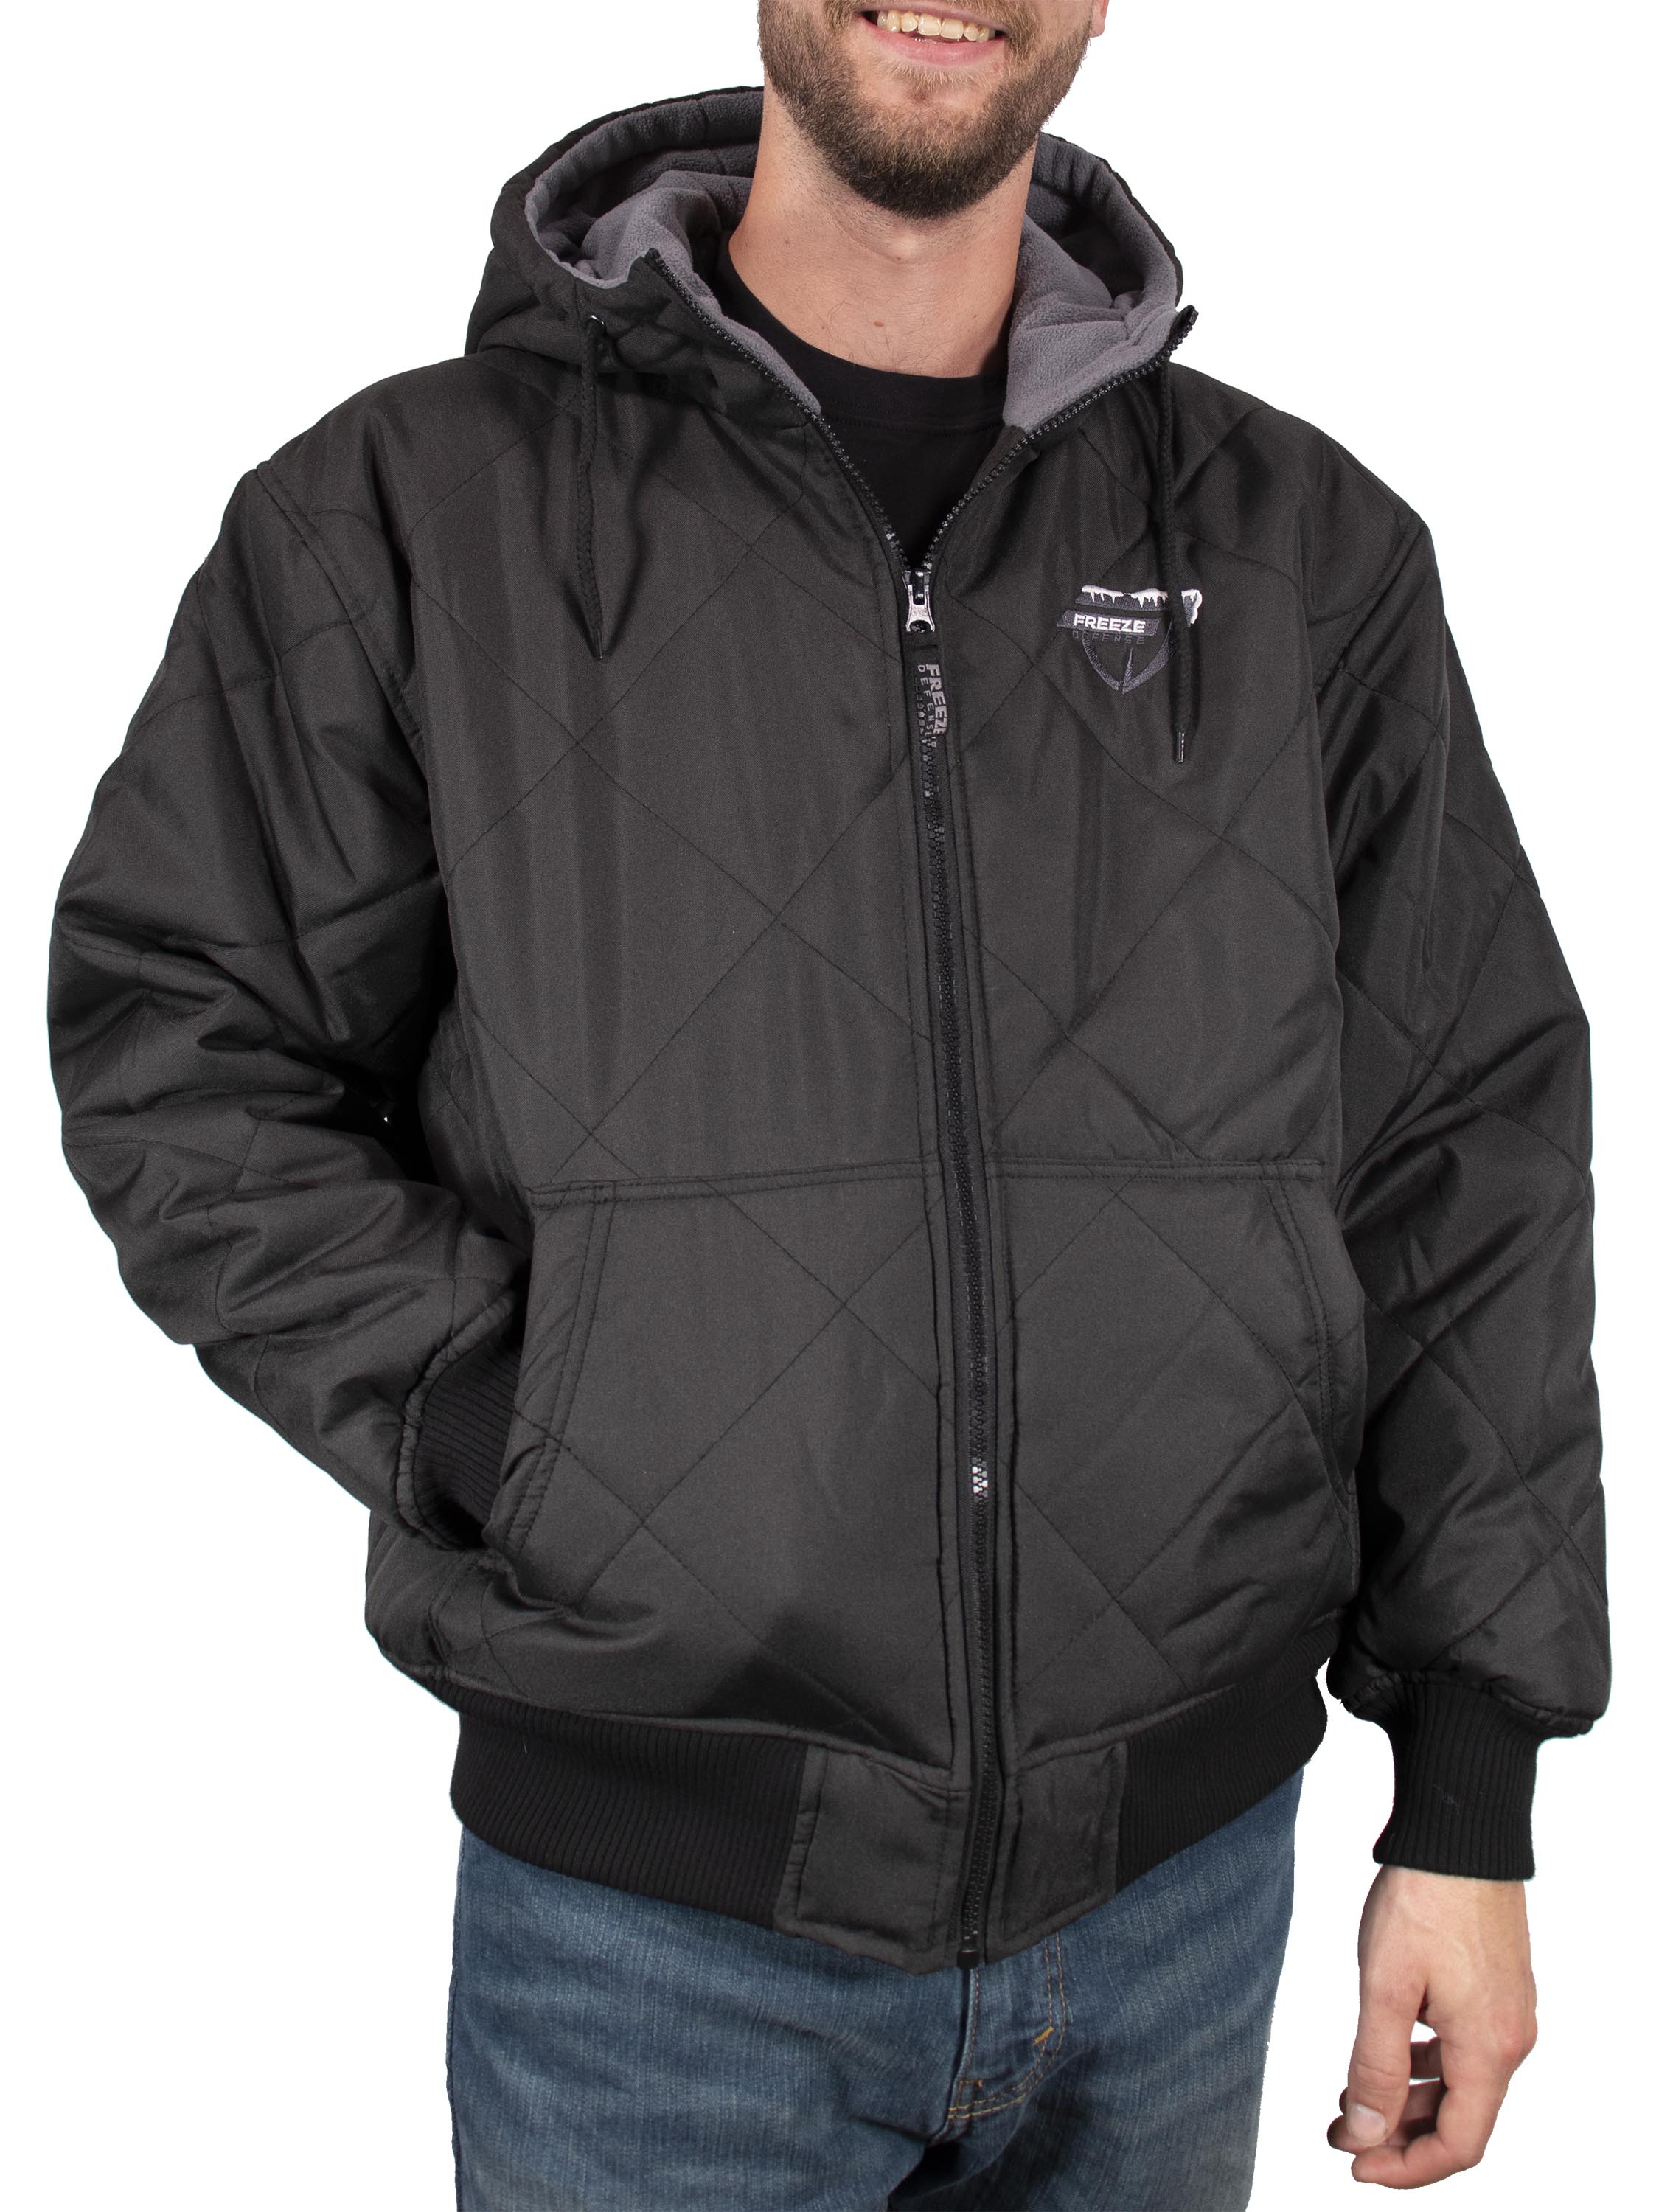 Landscap Mens Jacket Hoodie Fleece Full Zip Soft Jacket Sherpa Lined Jacket Multi-Pocket Winter Warm Classic Fit Jacket 